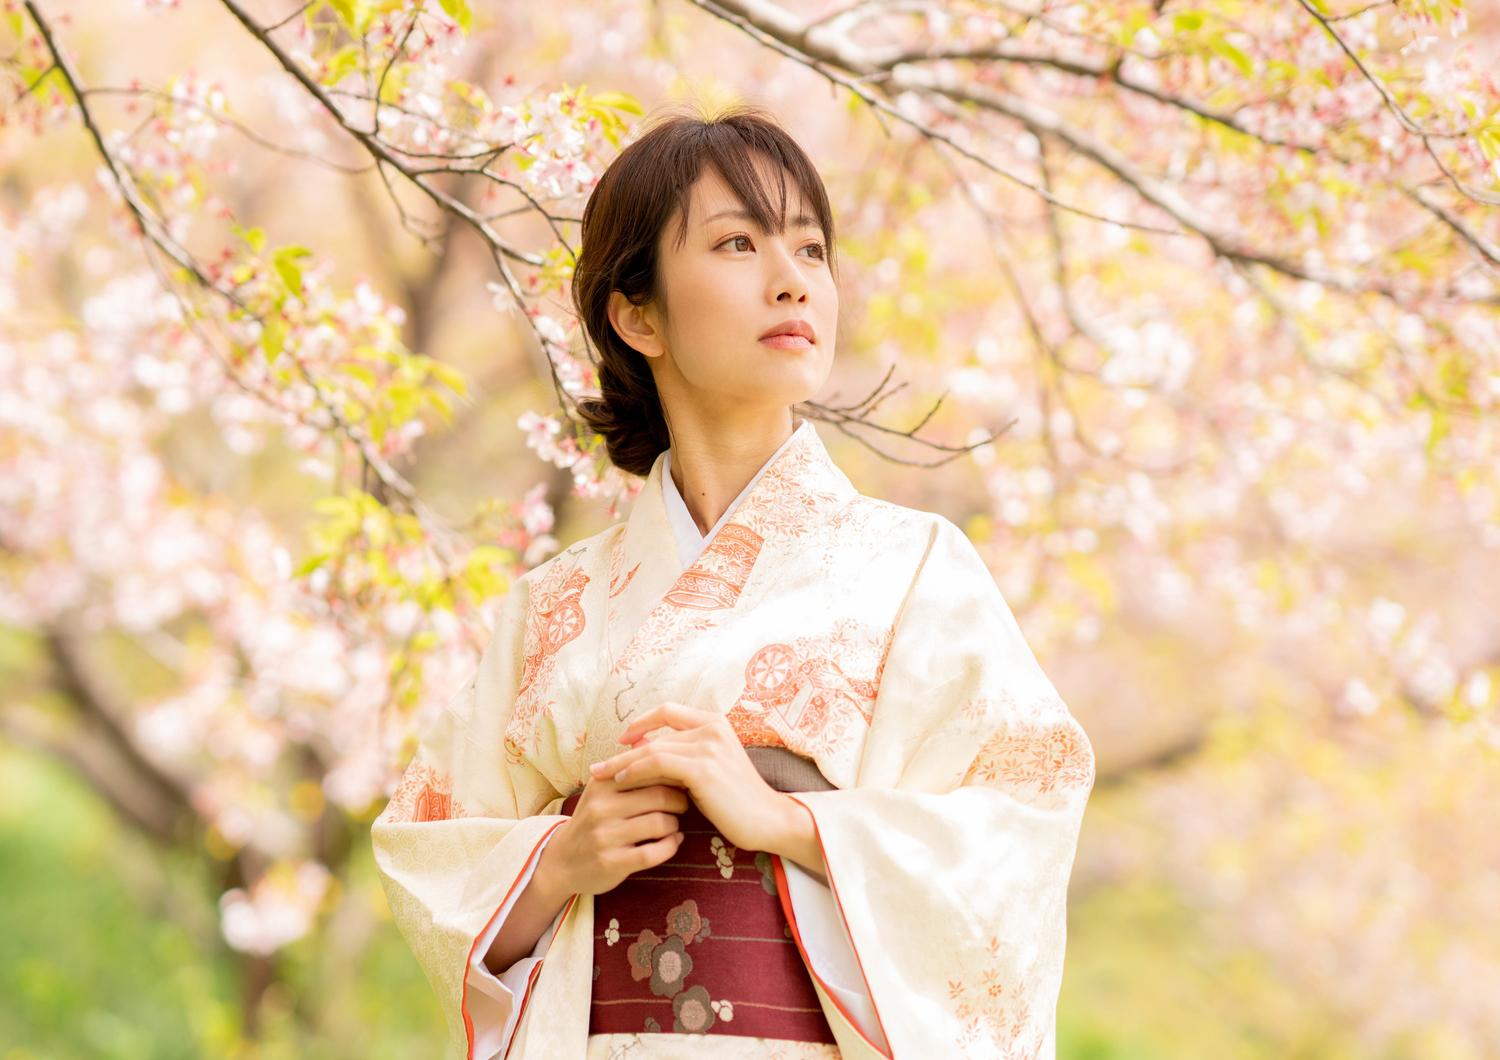 Có những loại kimono nào? Giải thích cách chọn thứ phù hợp với cấp bậc và  TPO của bạn! │KARUTA -Cùng Vui Học về NHẬT BẢN!